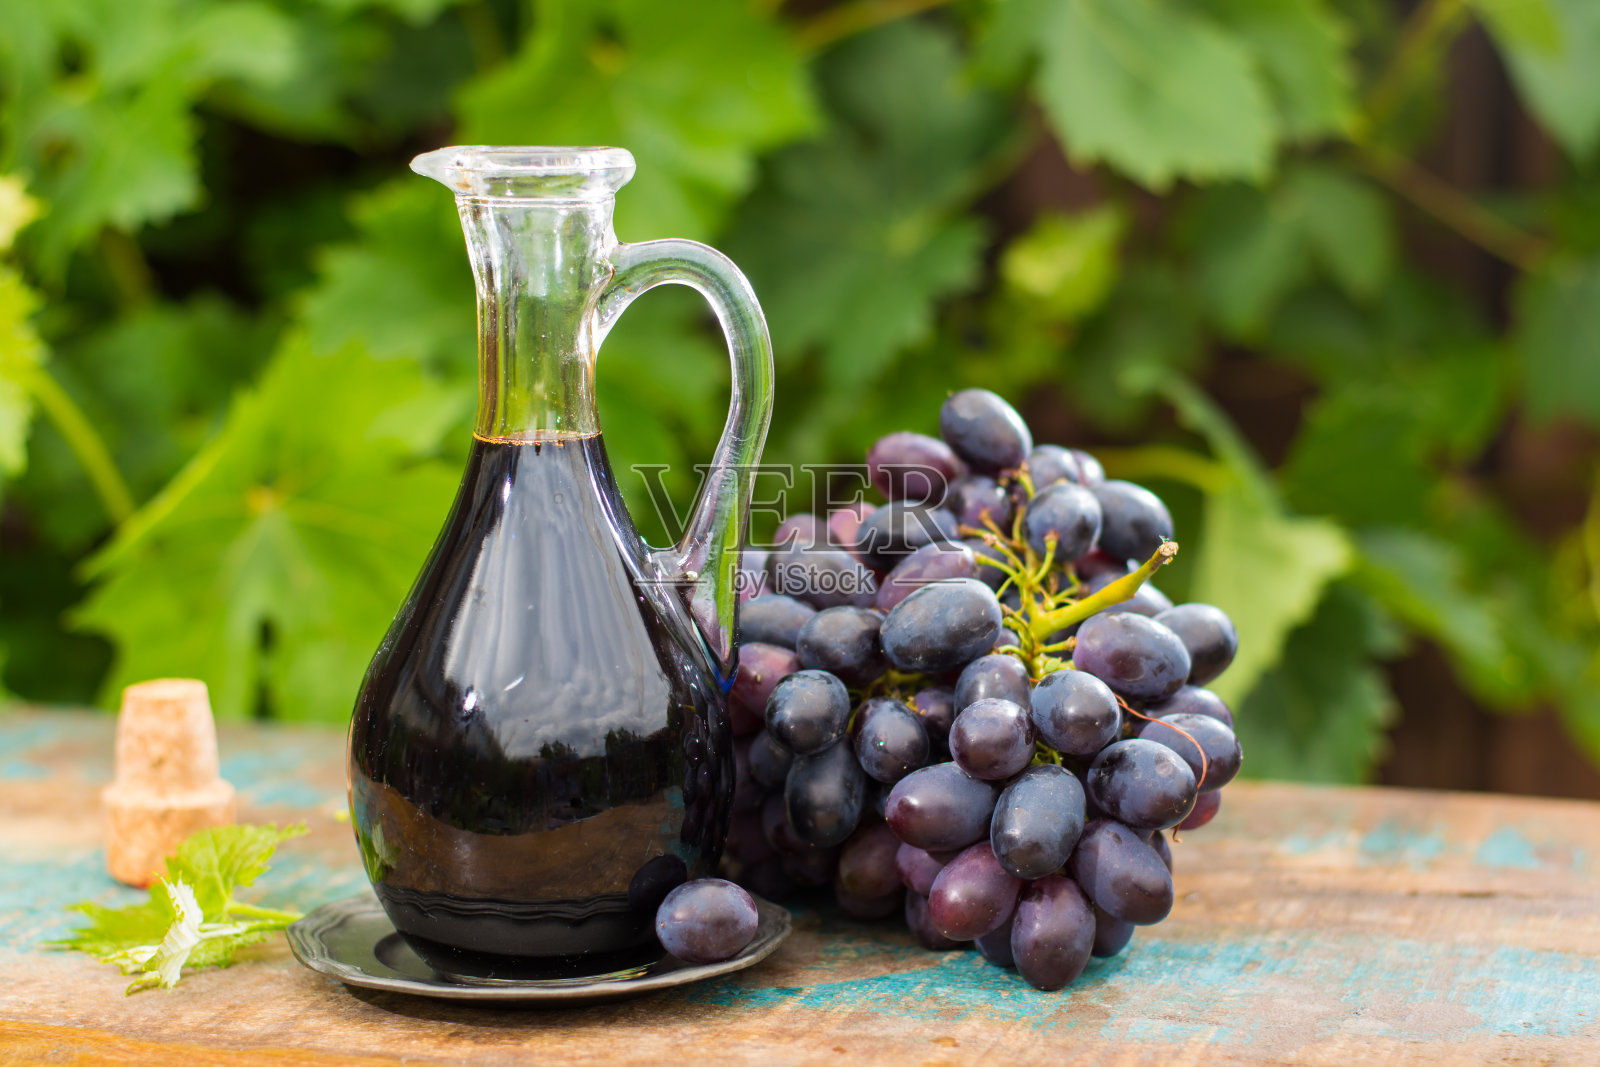 黑旧香醋在一个玻璃罐子与新鲜的红葡萄在绿色葡萄园的背景照片摄影图片